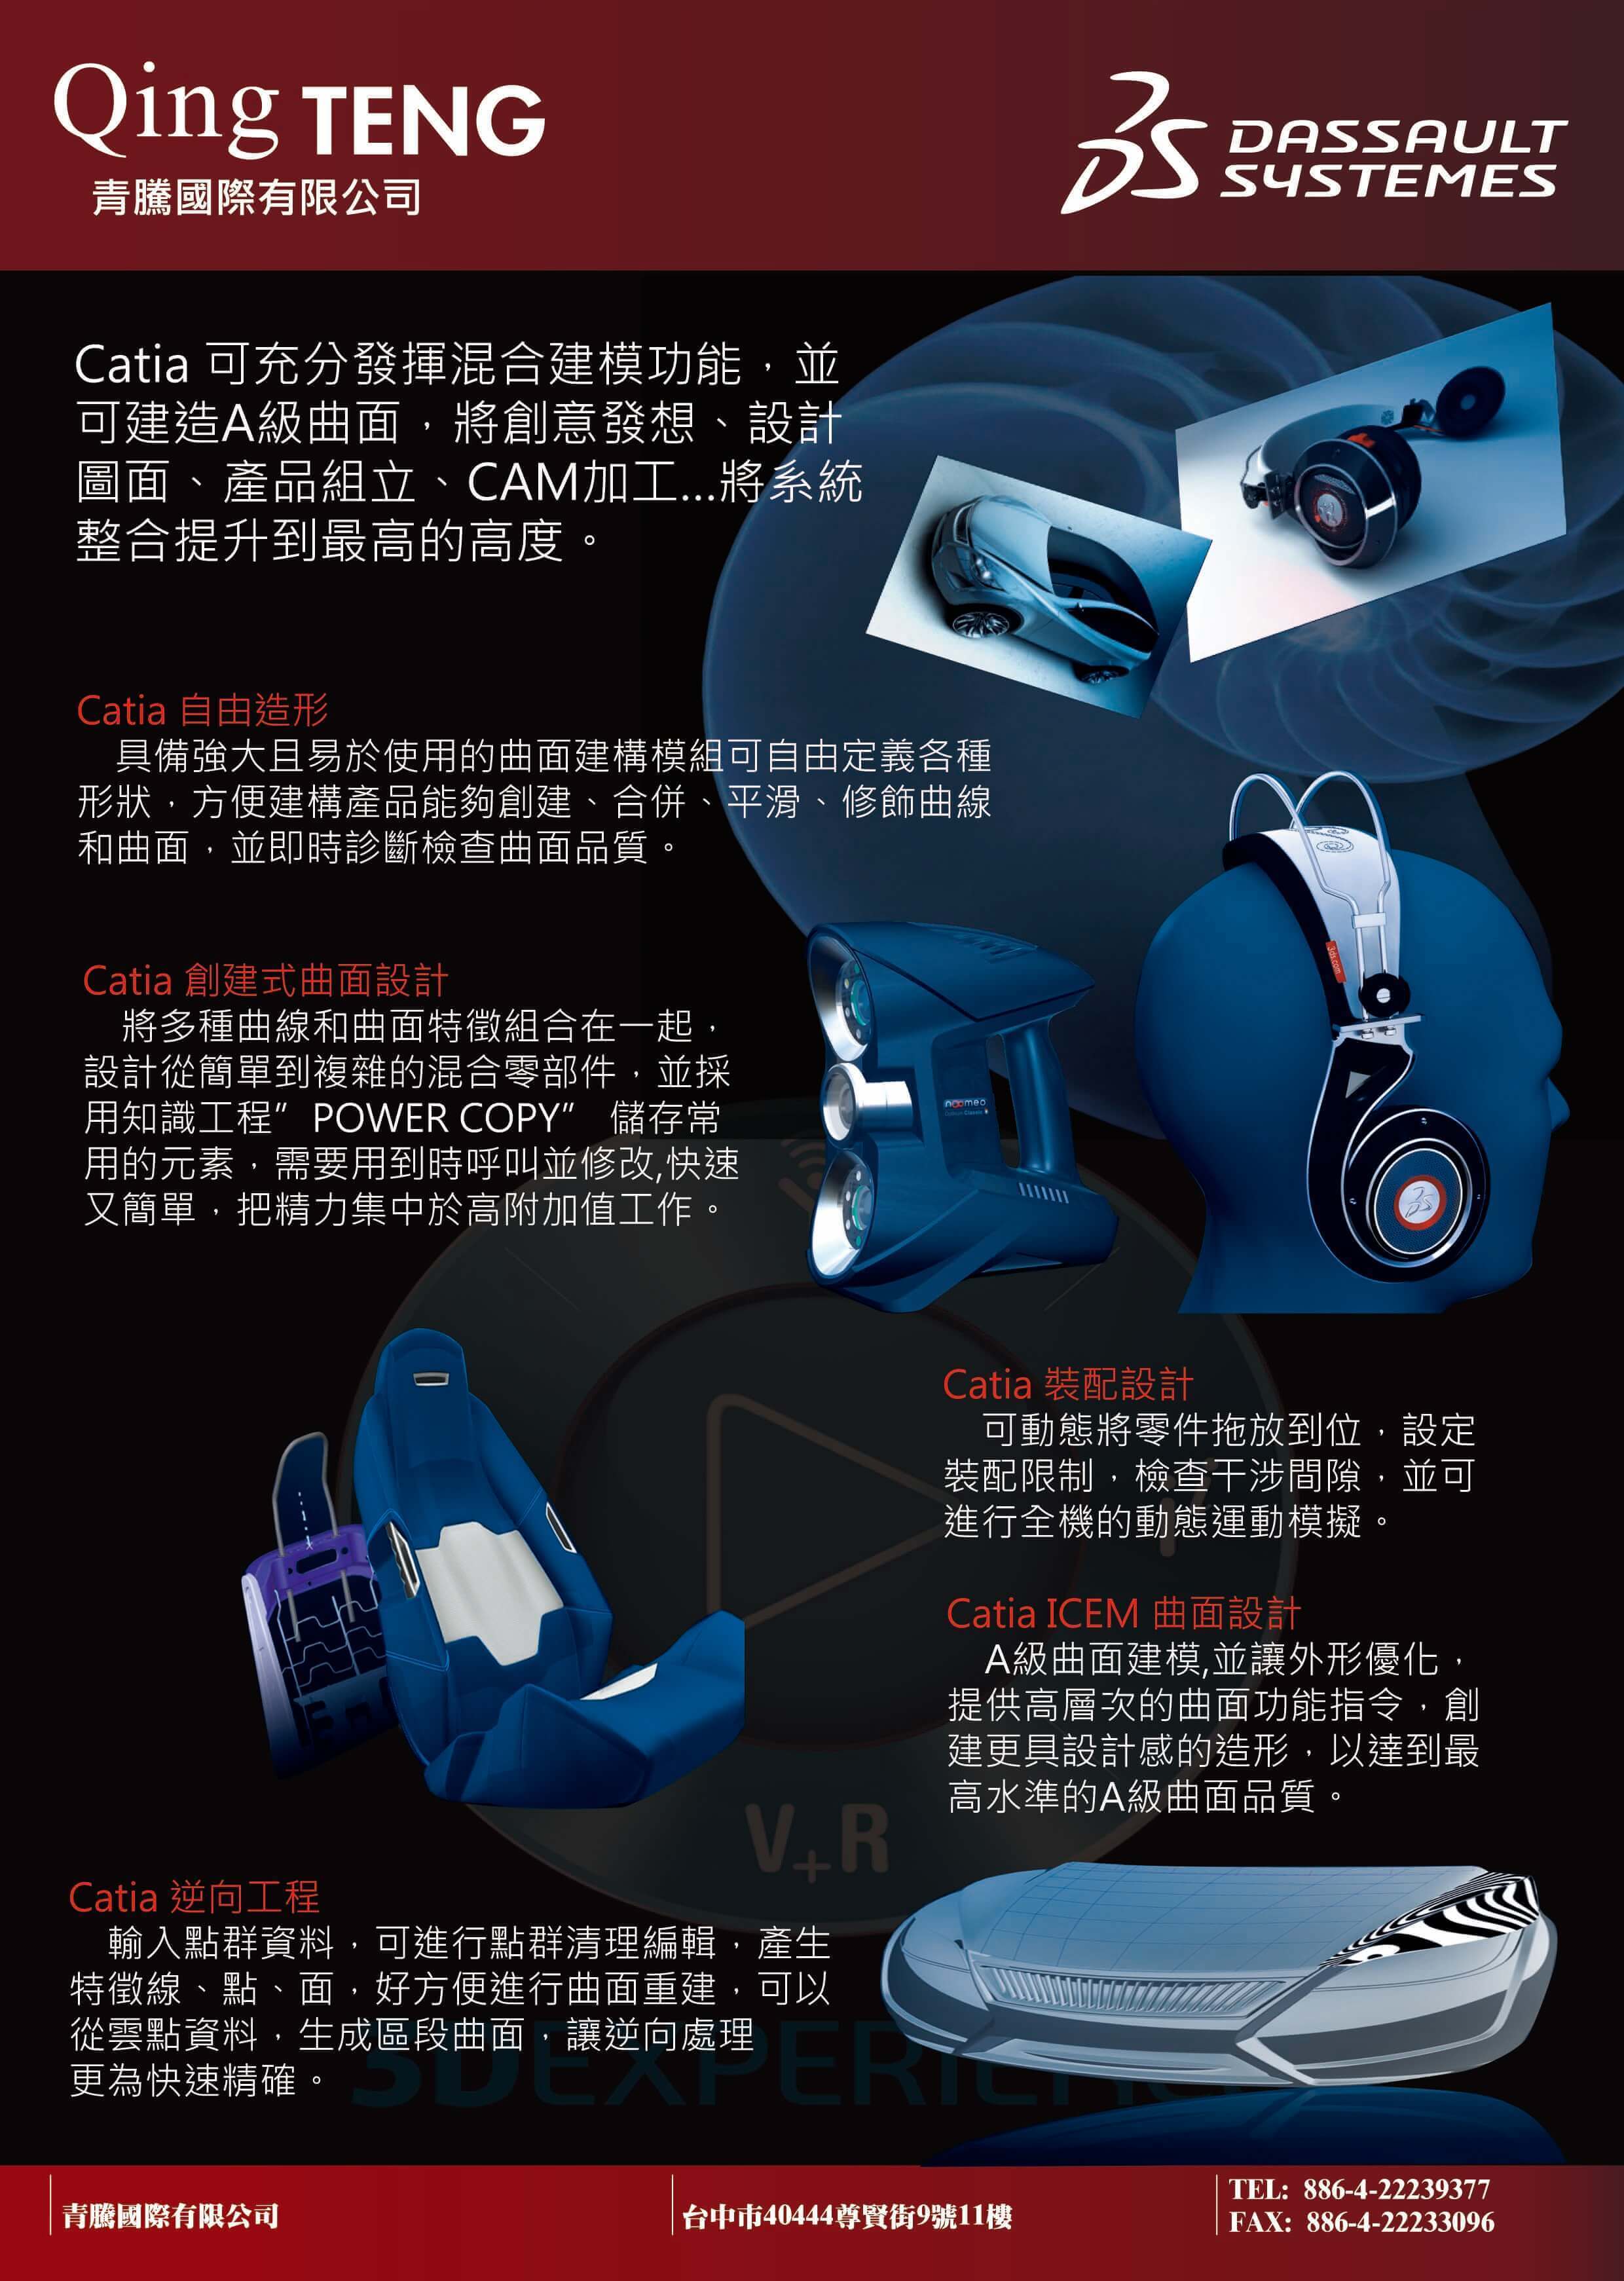 2017高雄自動化工業展:機器手臂(Robot)加工展示與VR擴增實境